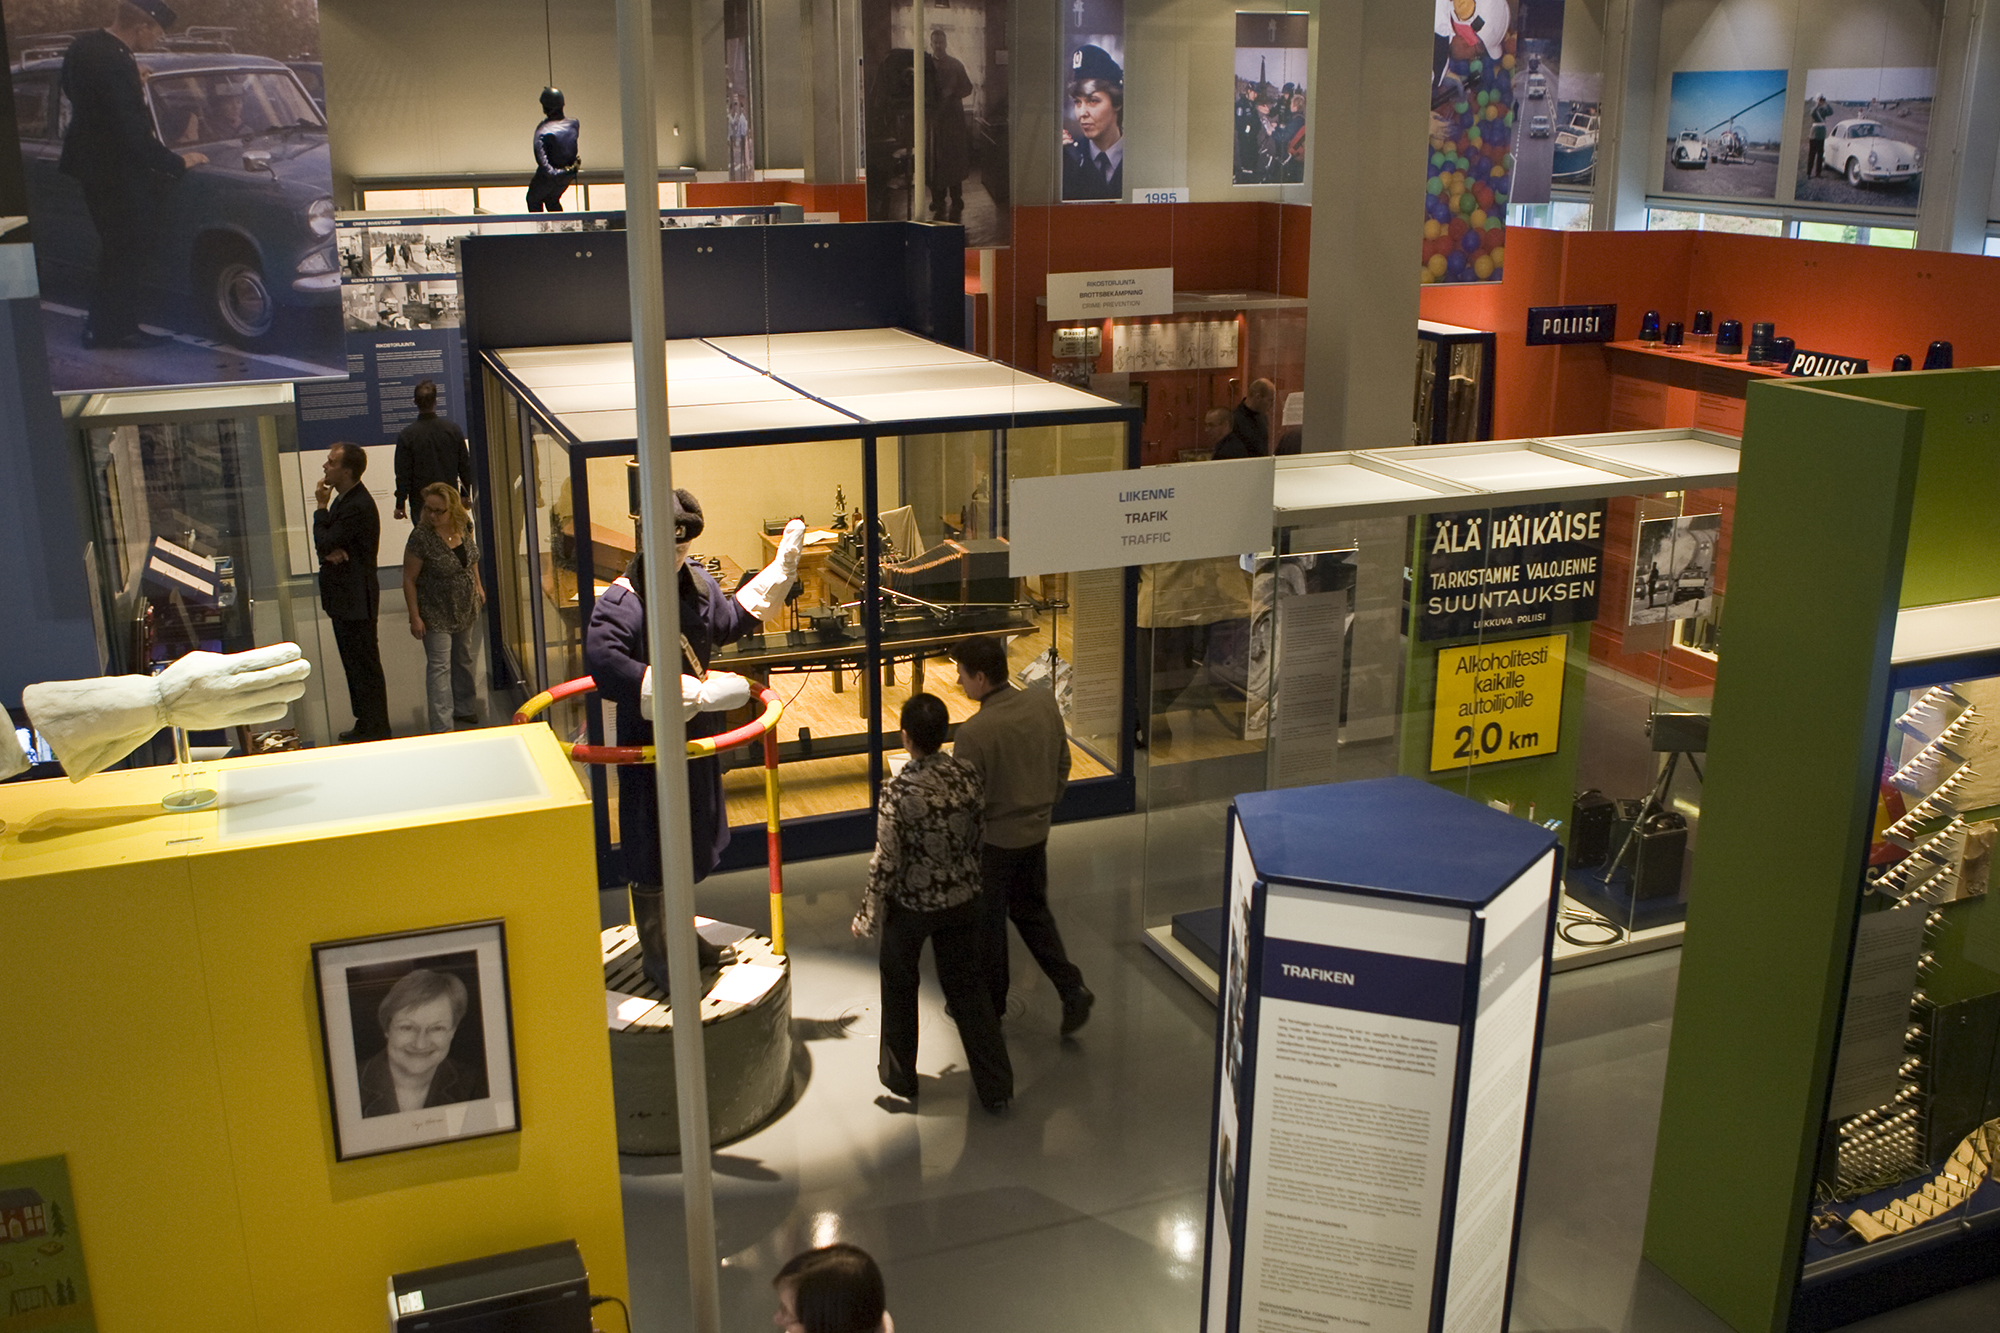 Allmän bild av Polismuseets utställning. På bilden går museibesökare runt mellan vitrinerna, i lokalen syns bland annat fotografier och föremål med anknytning till polisens arbete. Bild Polismuseet